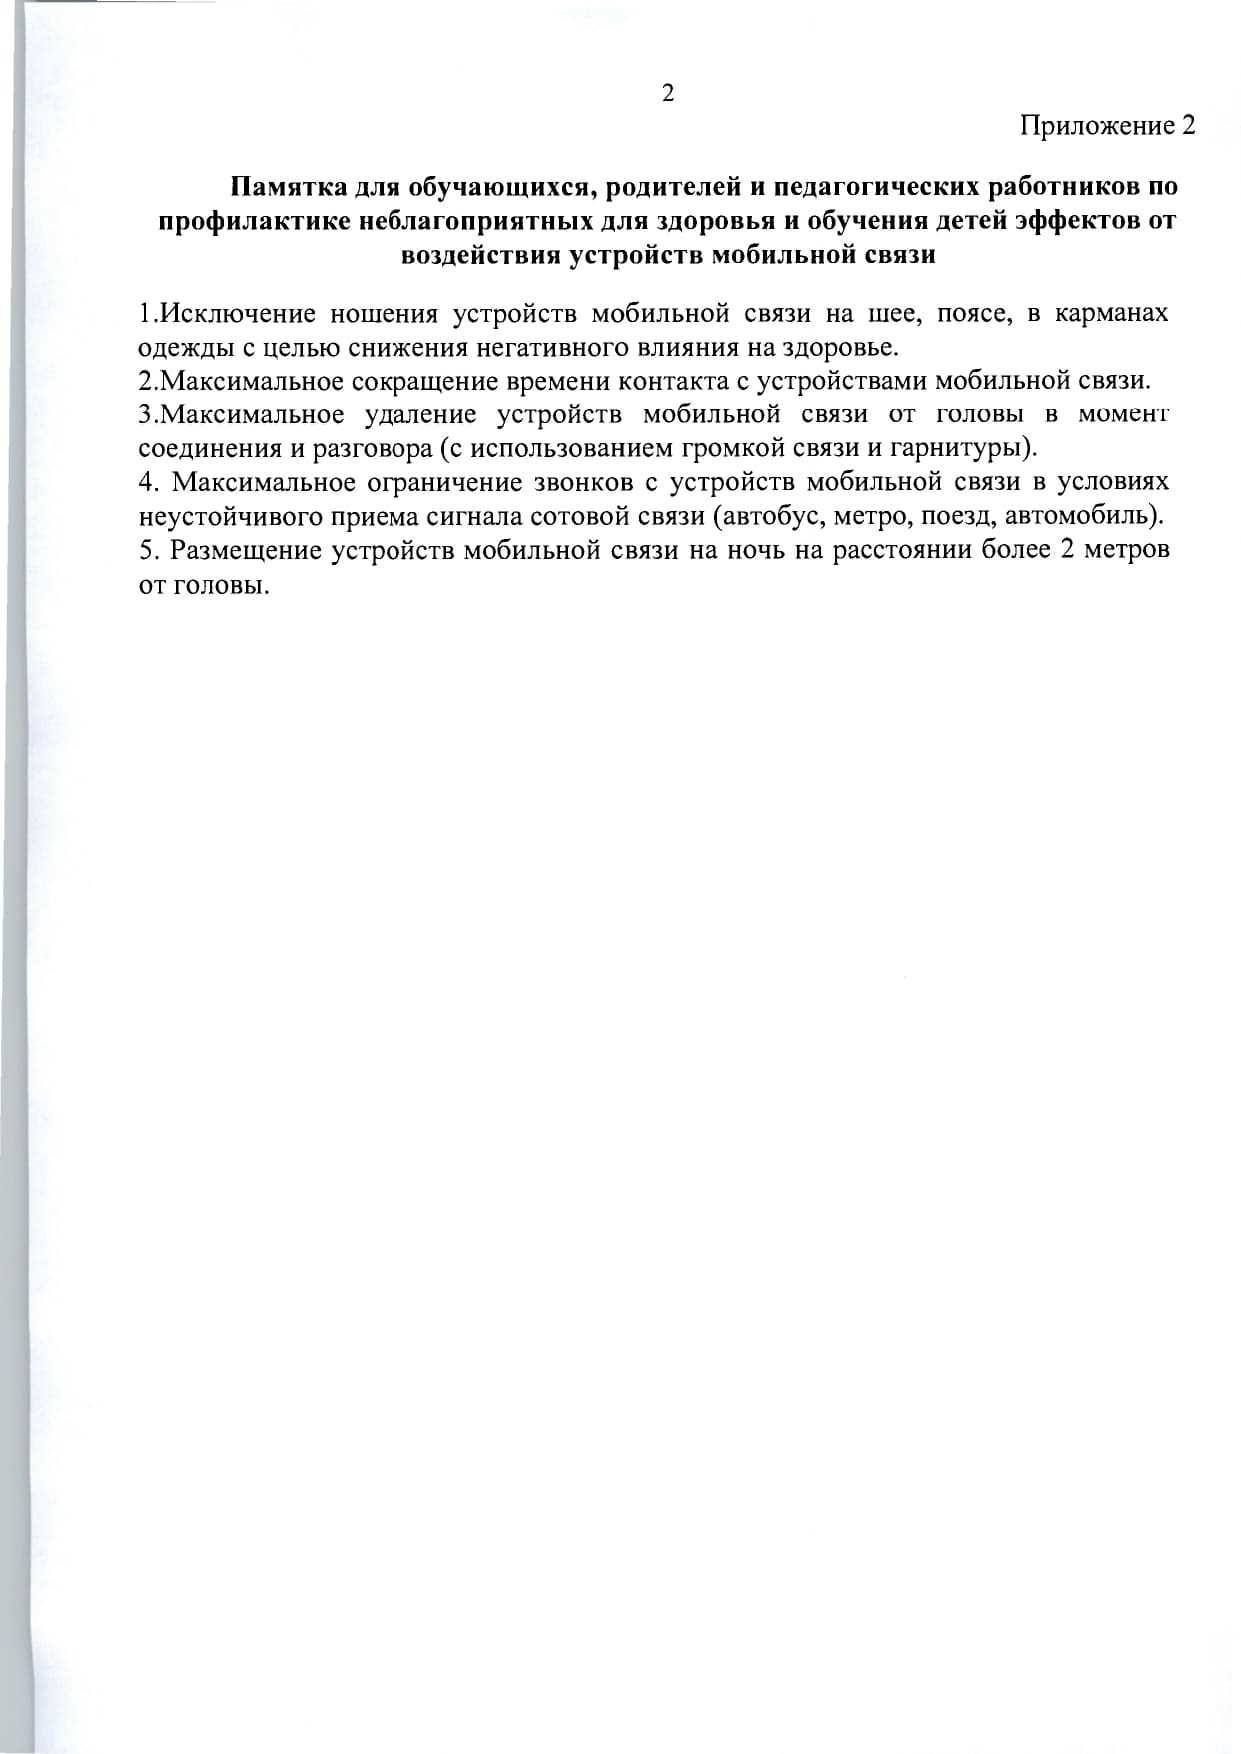 mr-telefony-v-obrazovatelnykh-org- 1  page-0008